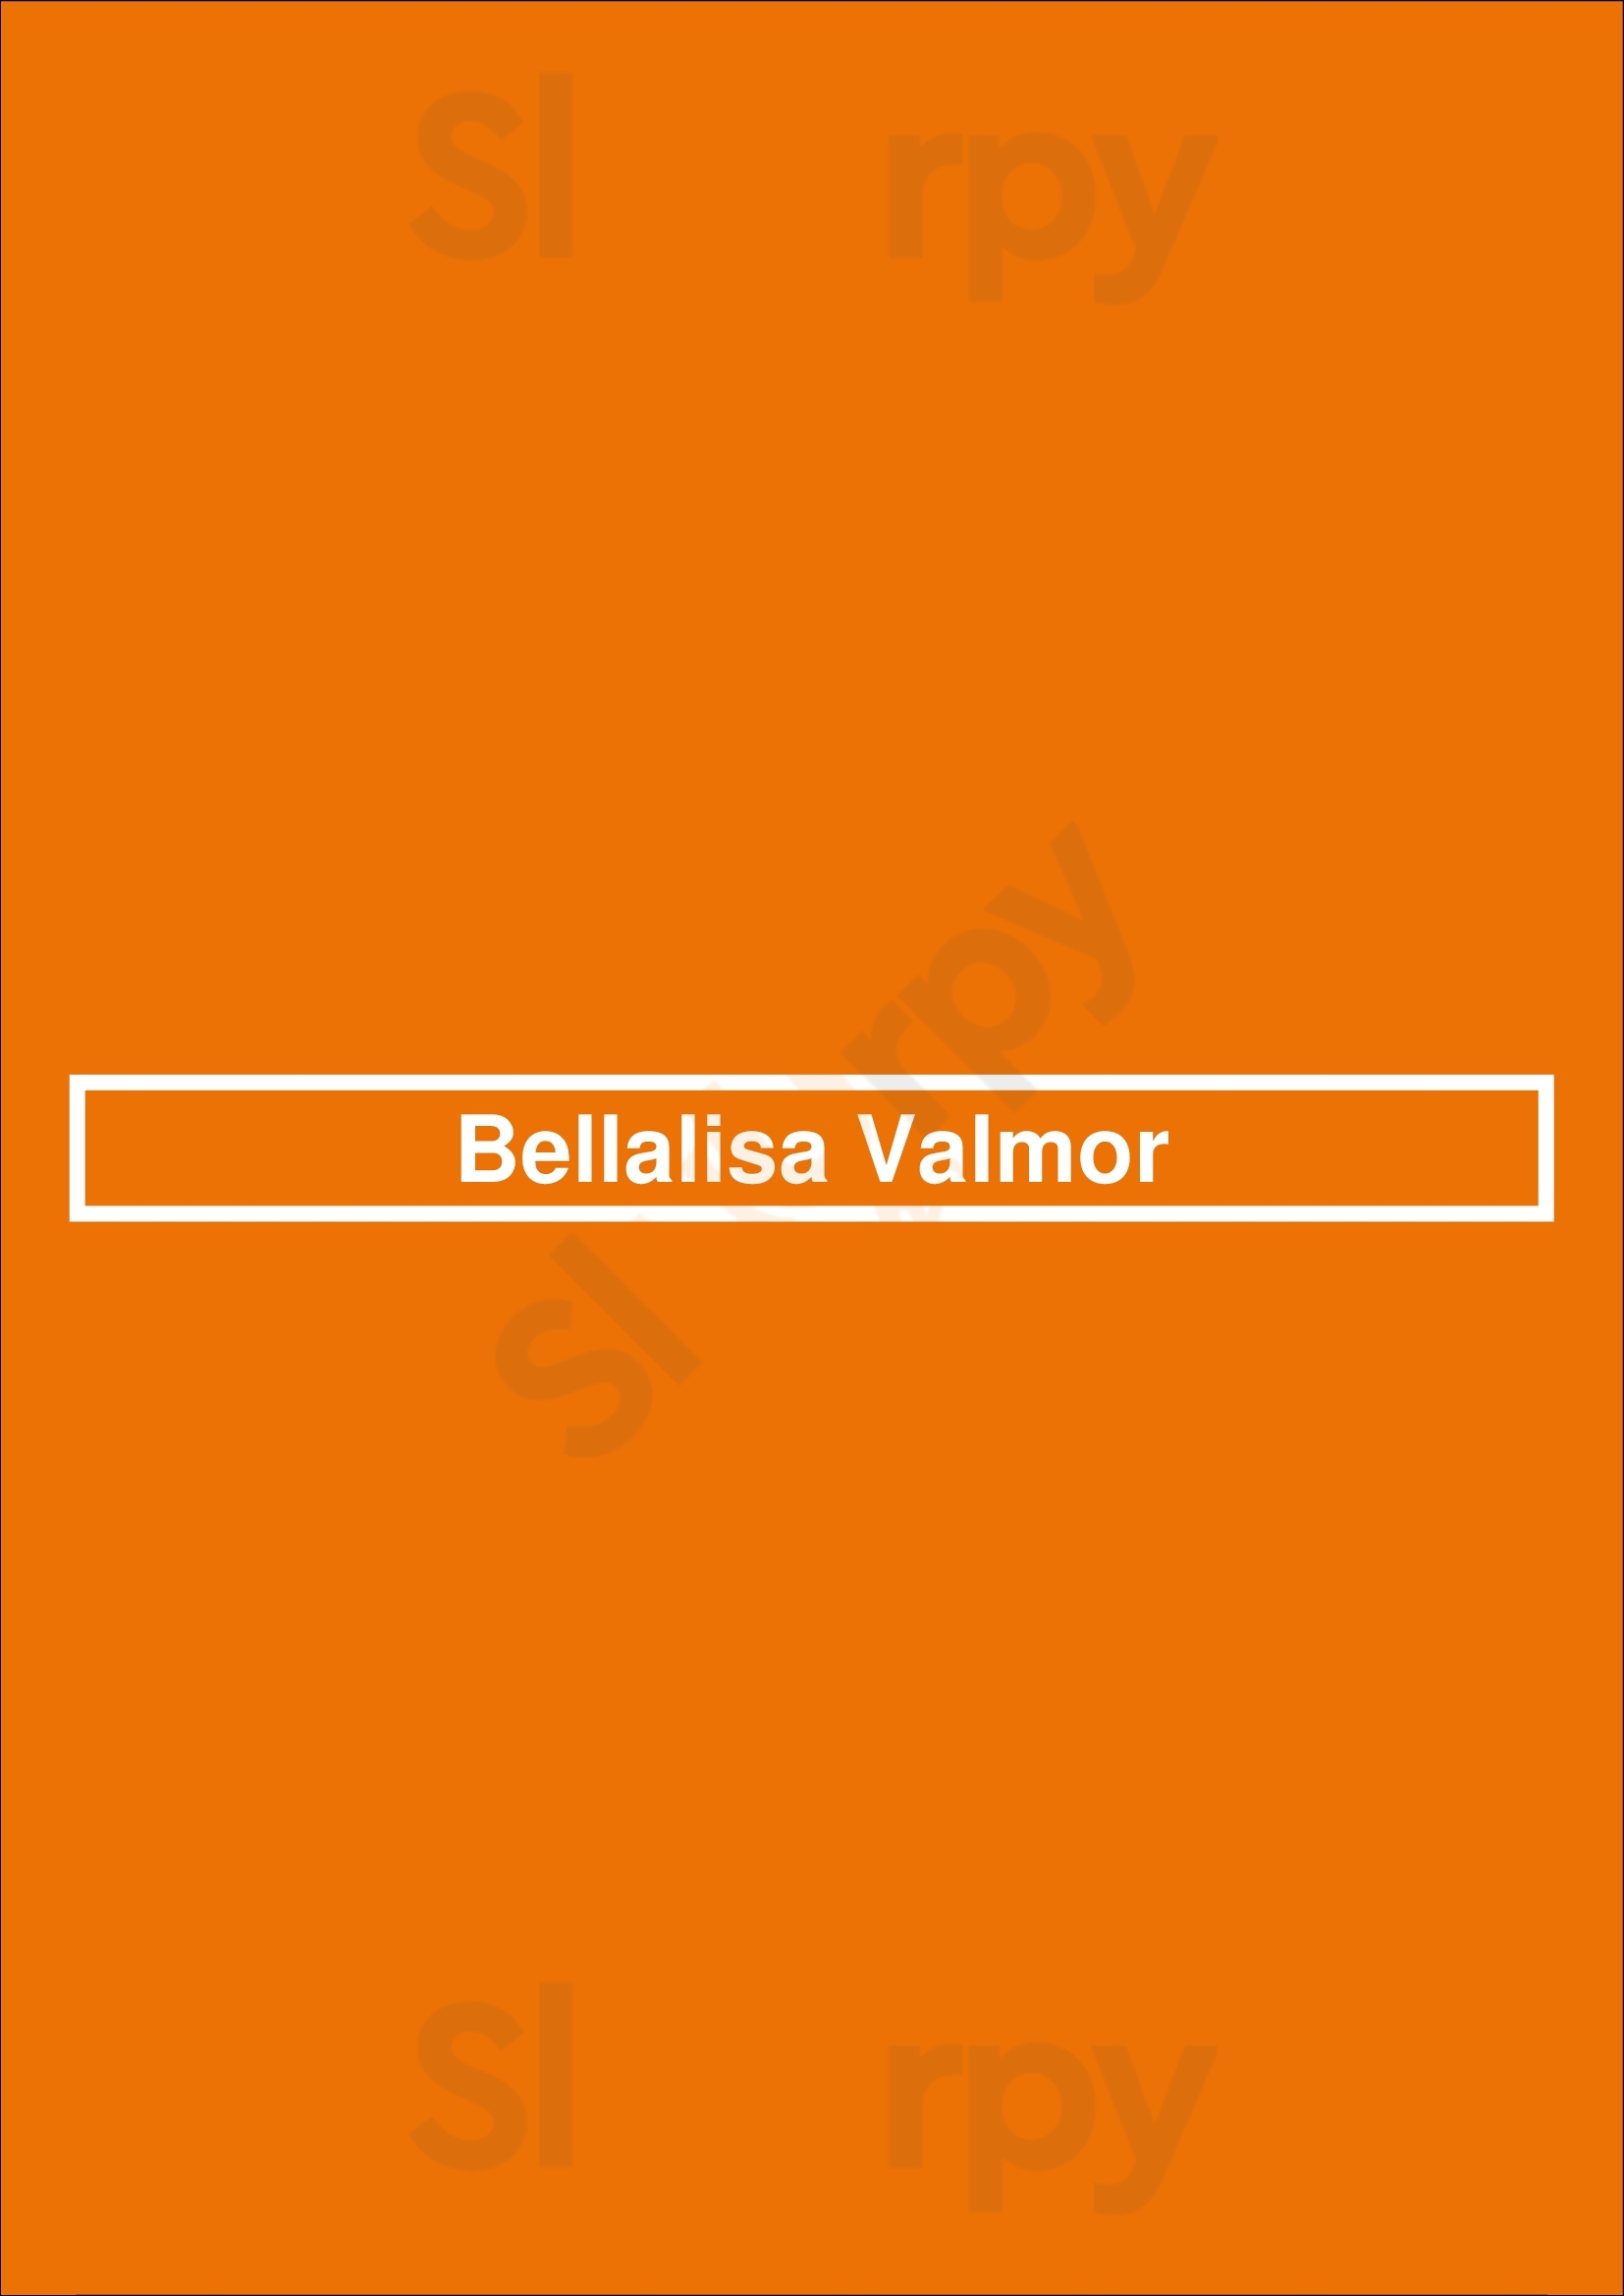 Bellalisa Valmor Lisboa Menu - 1